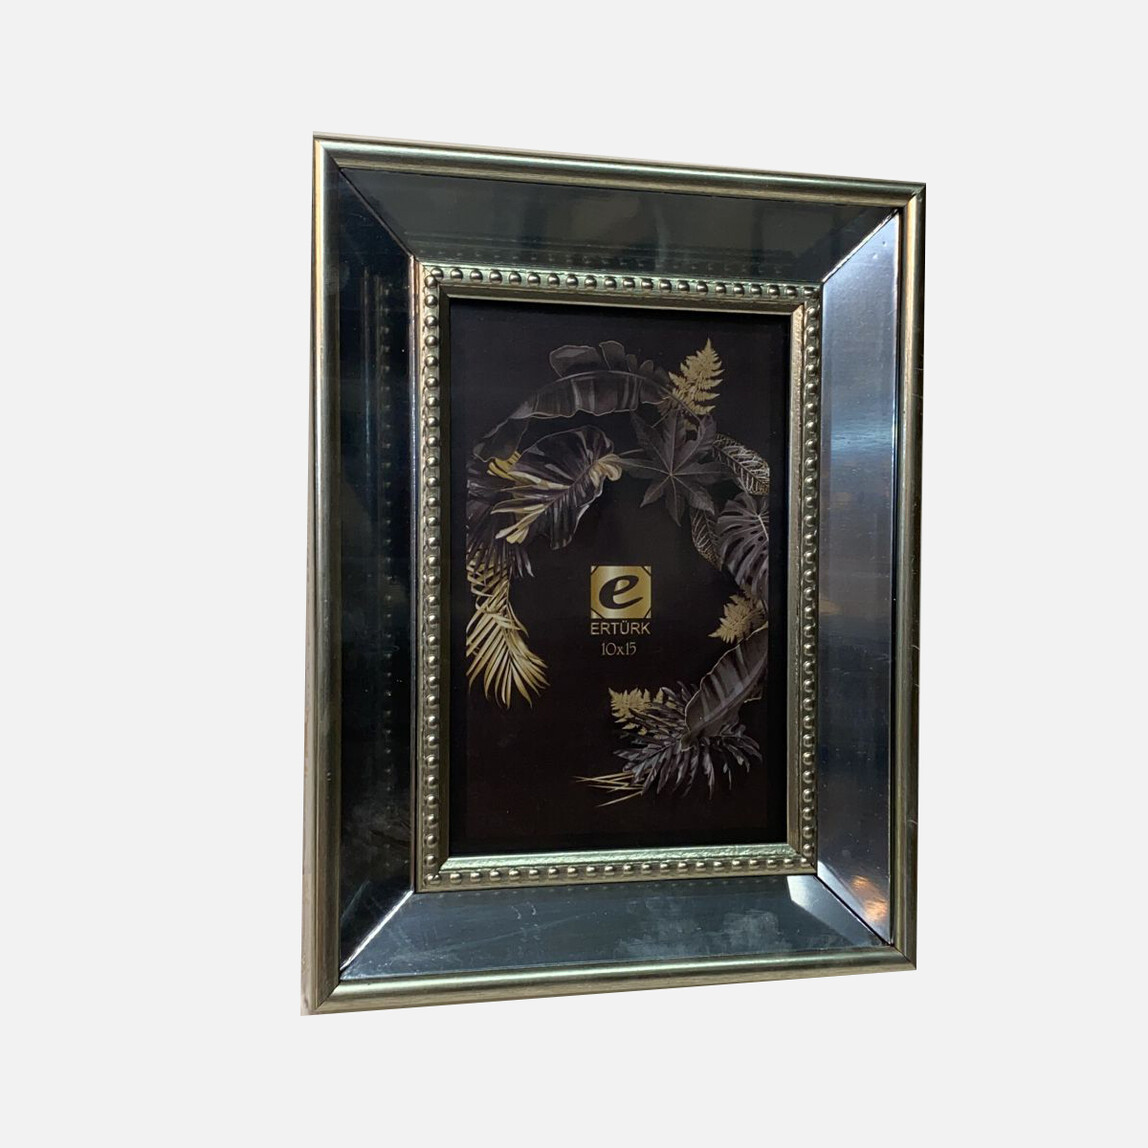    Ertürk Gümüş Aynalı Çerçeve 10x15 cm  